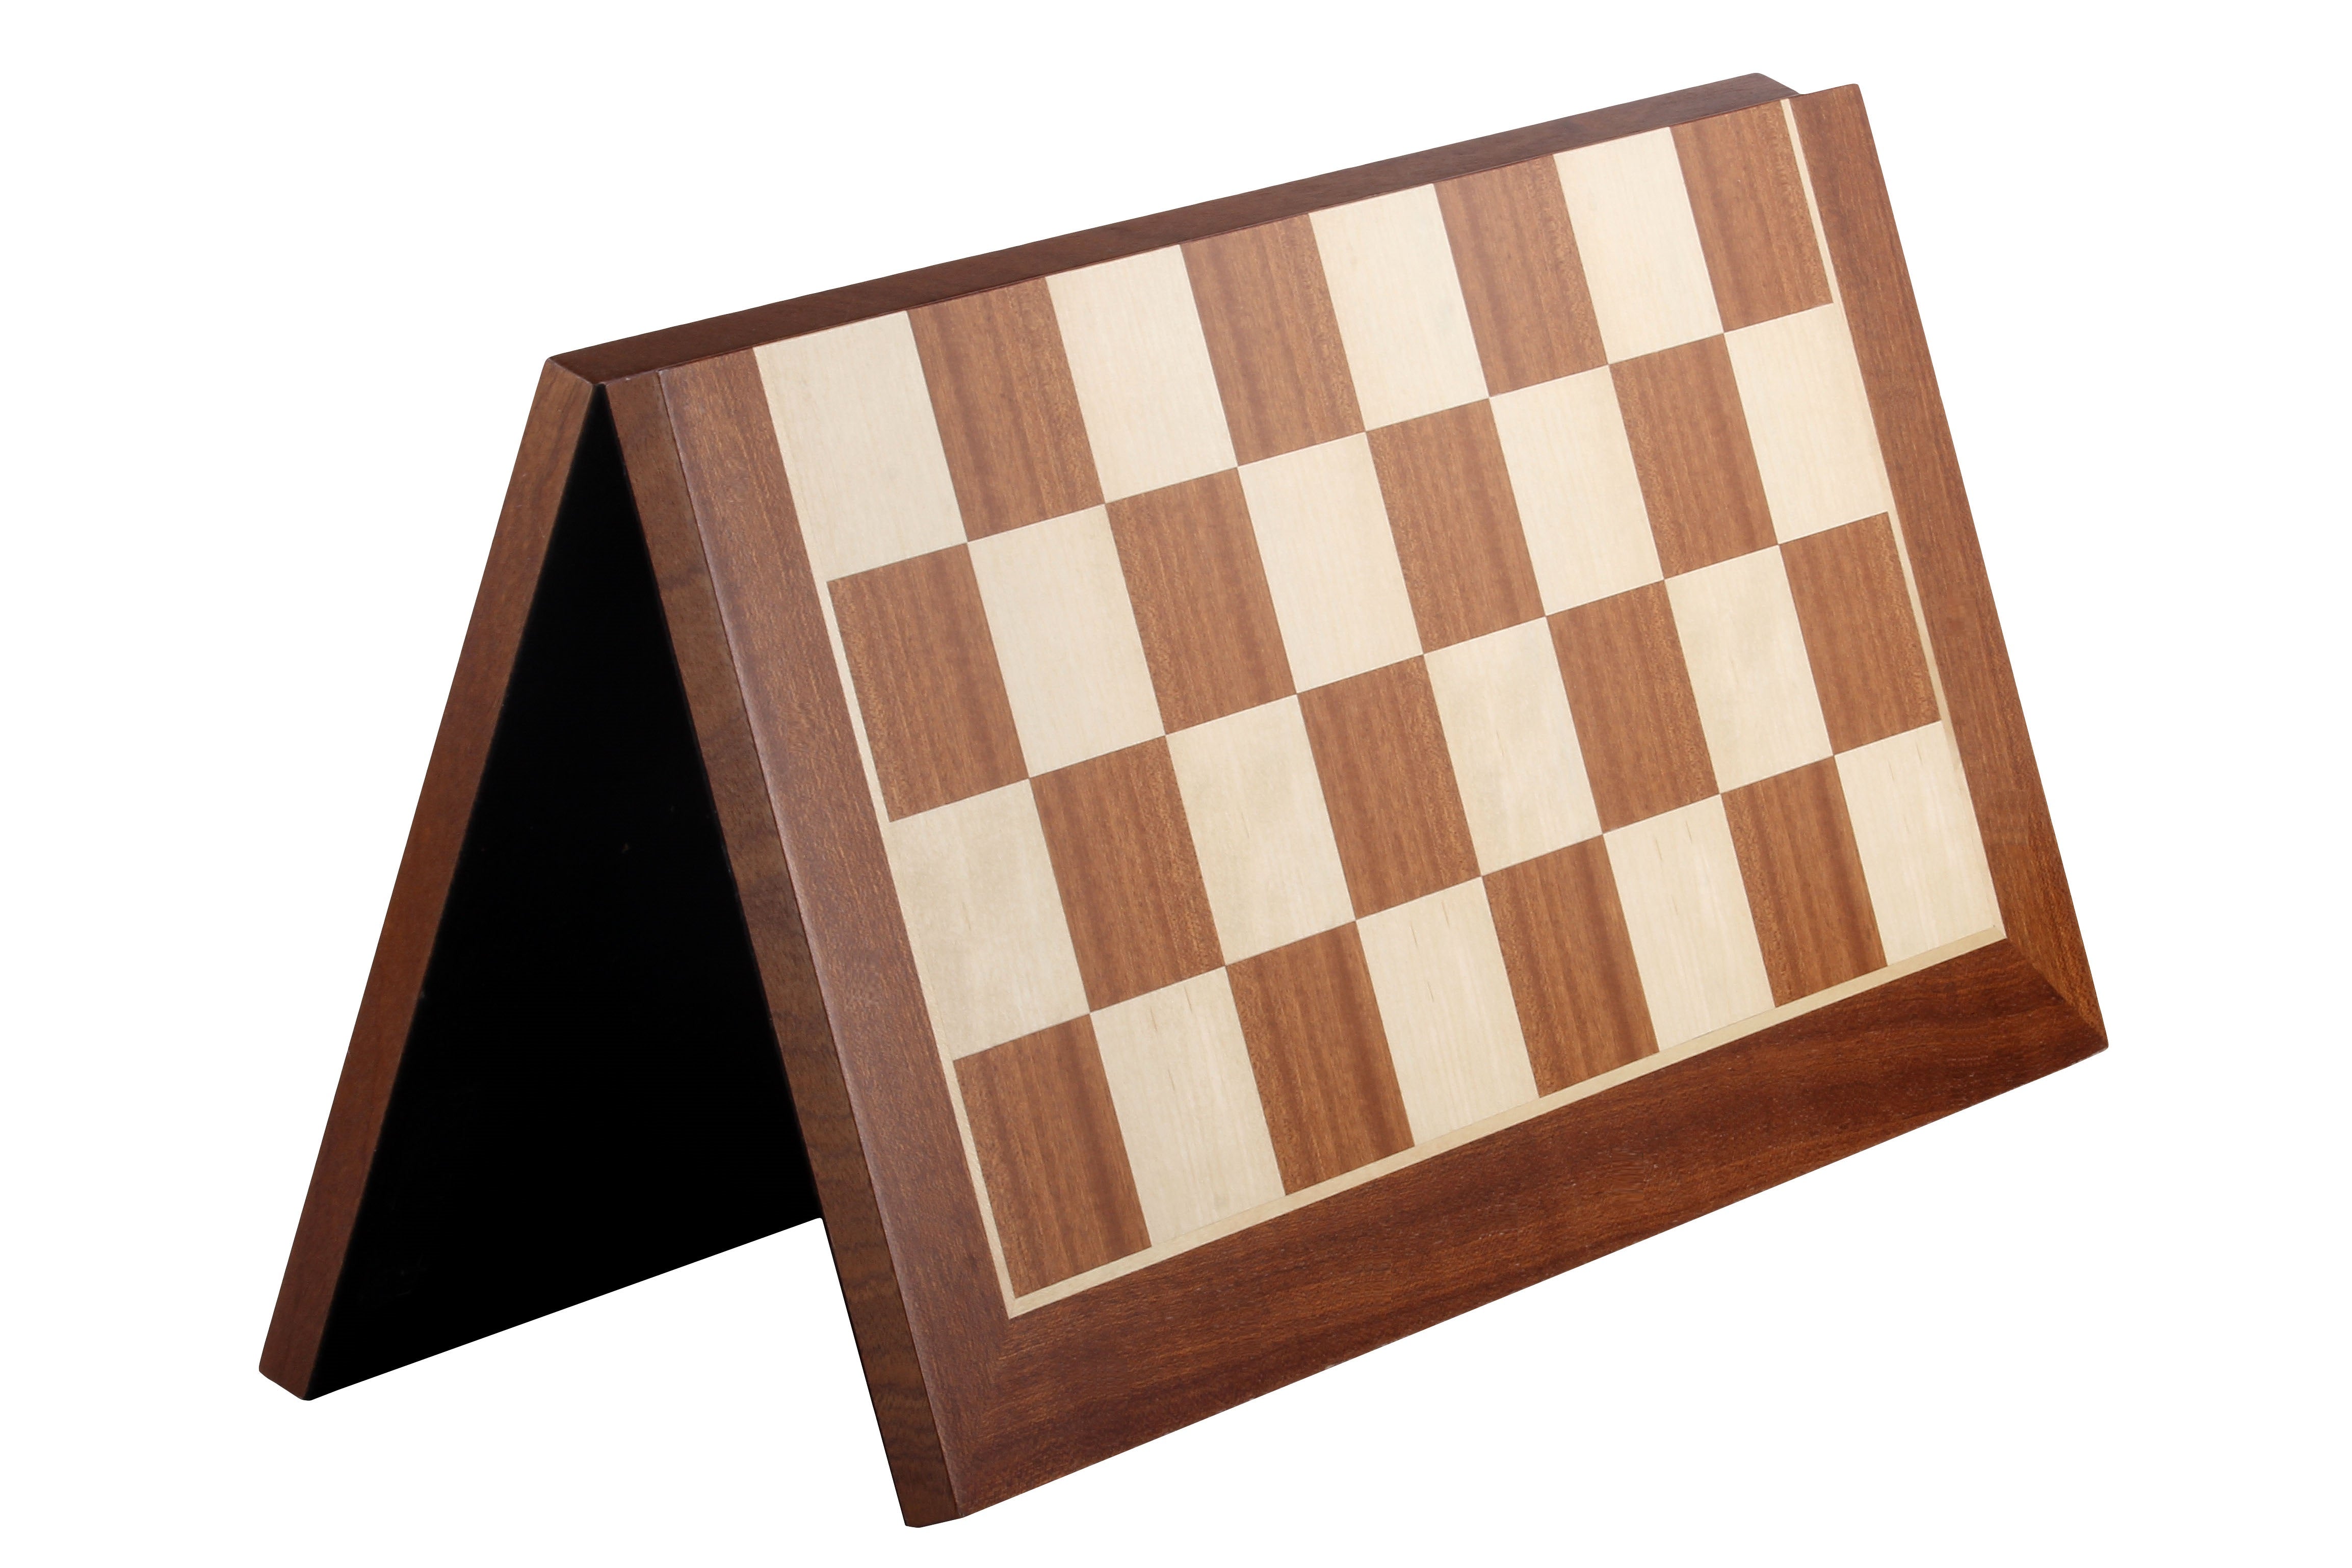 Turnier Schachbrett aus Mahagoni und Buchahorn, klappbar, Feldergröße 58 mm